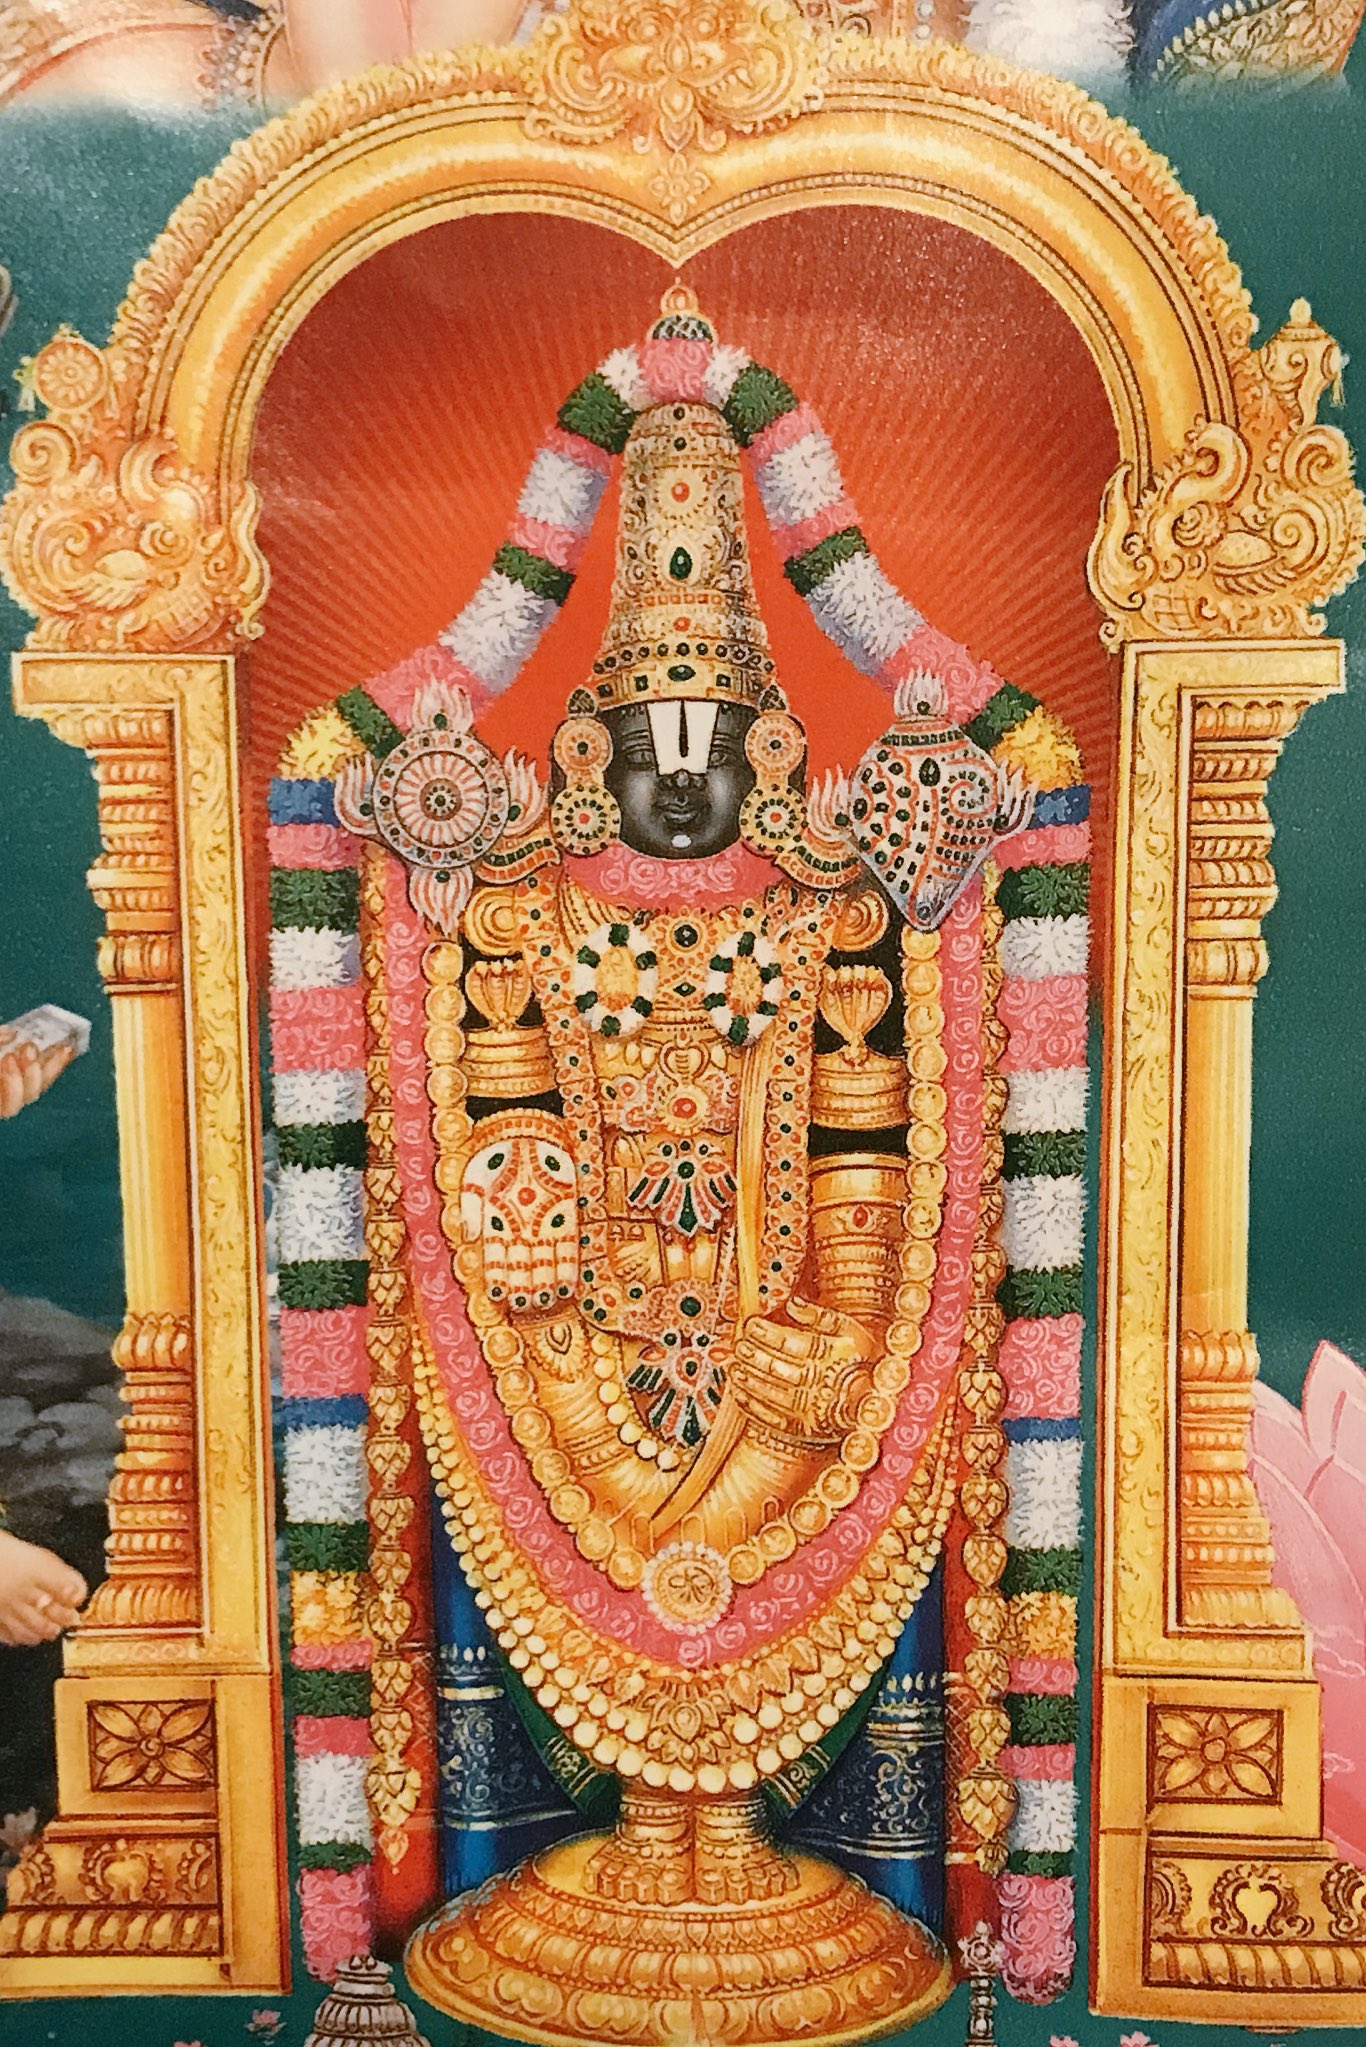 インド神話の天竺奇譚 ヴェンカタってヴェンカタ王もそうかもだけど南インドにはヴェンカテーシュワラっていうヴィシュヌの 化身とされてる神様がいて 目ヂカラ強すぎるので目隠ししてる神様 罪が清められる最強パワーあるらしい こちらはうちに飾ってる